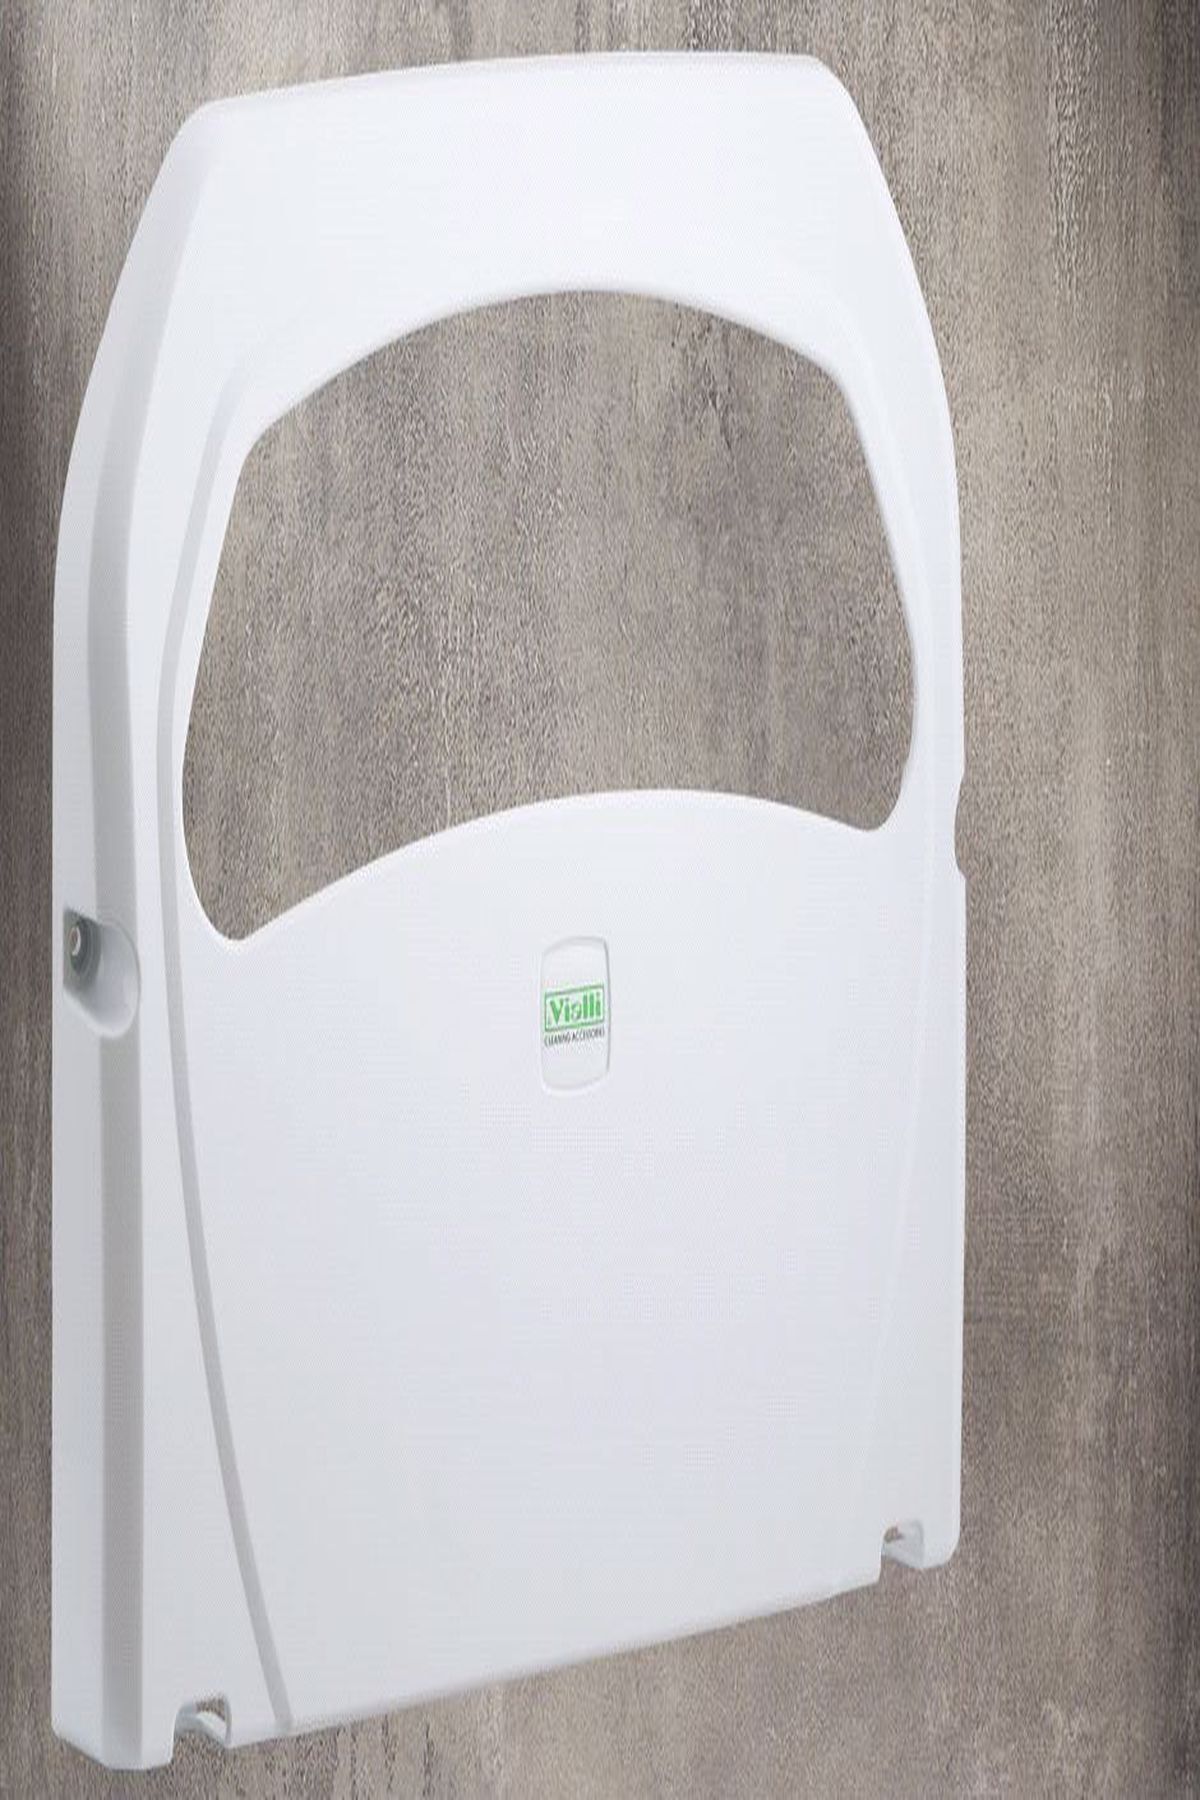 KUGULET Beyaz Klozet Kapak Örtüsü Banyo Wc Ve Tuvalet Aparatı Dispanseri